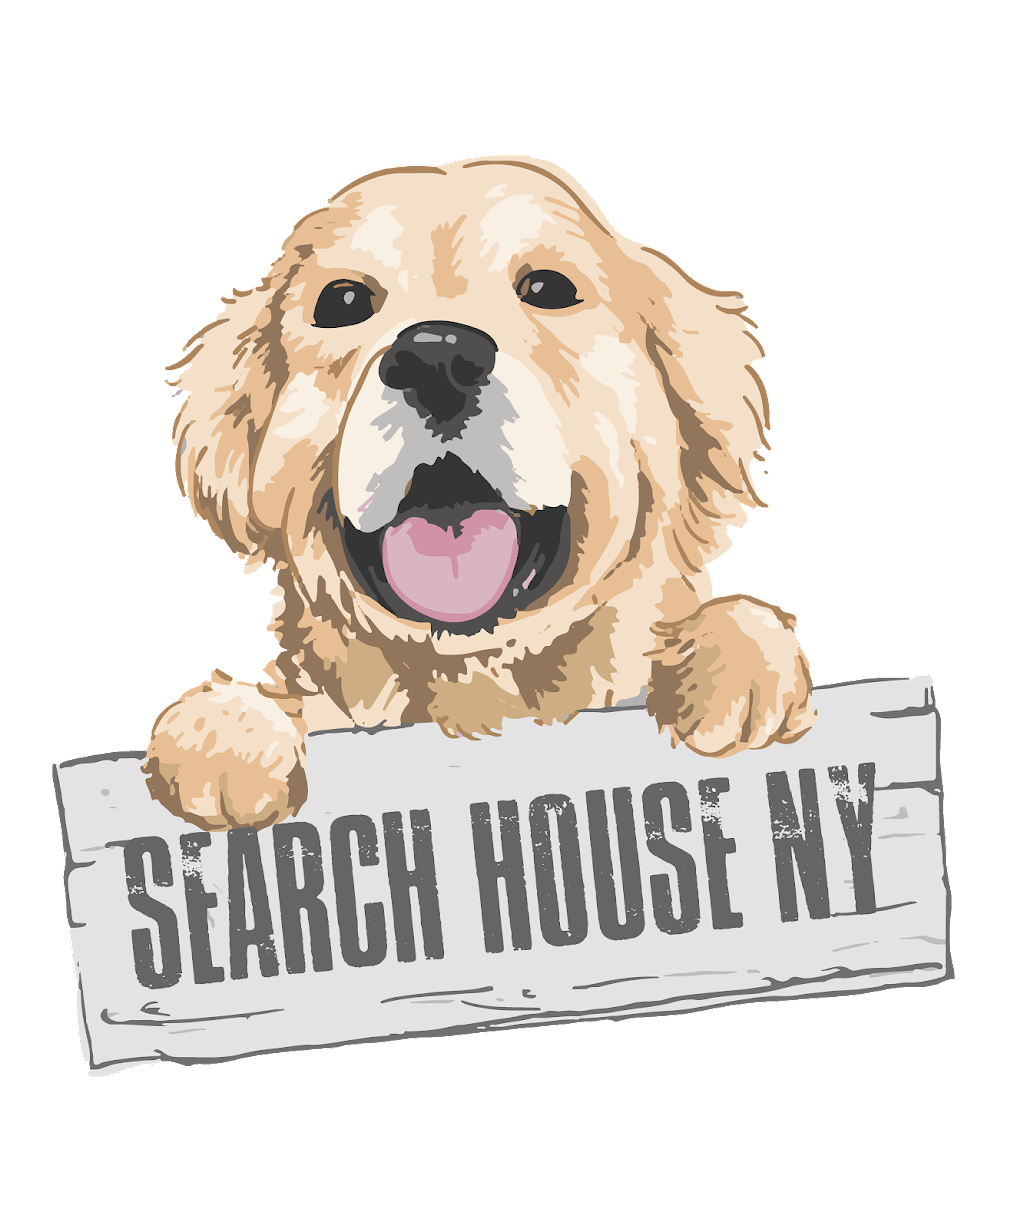 Search House NY, Inc | 240 Kent Ave, Brooklyn, NY 11249, USA | Phone: (917) 500-0418